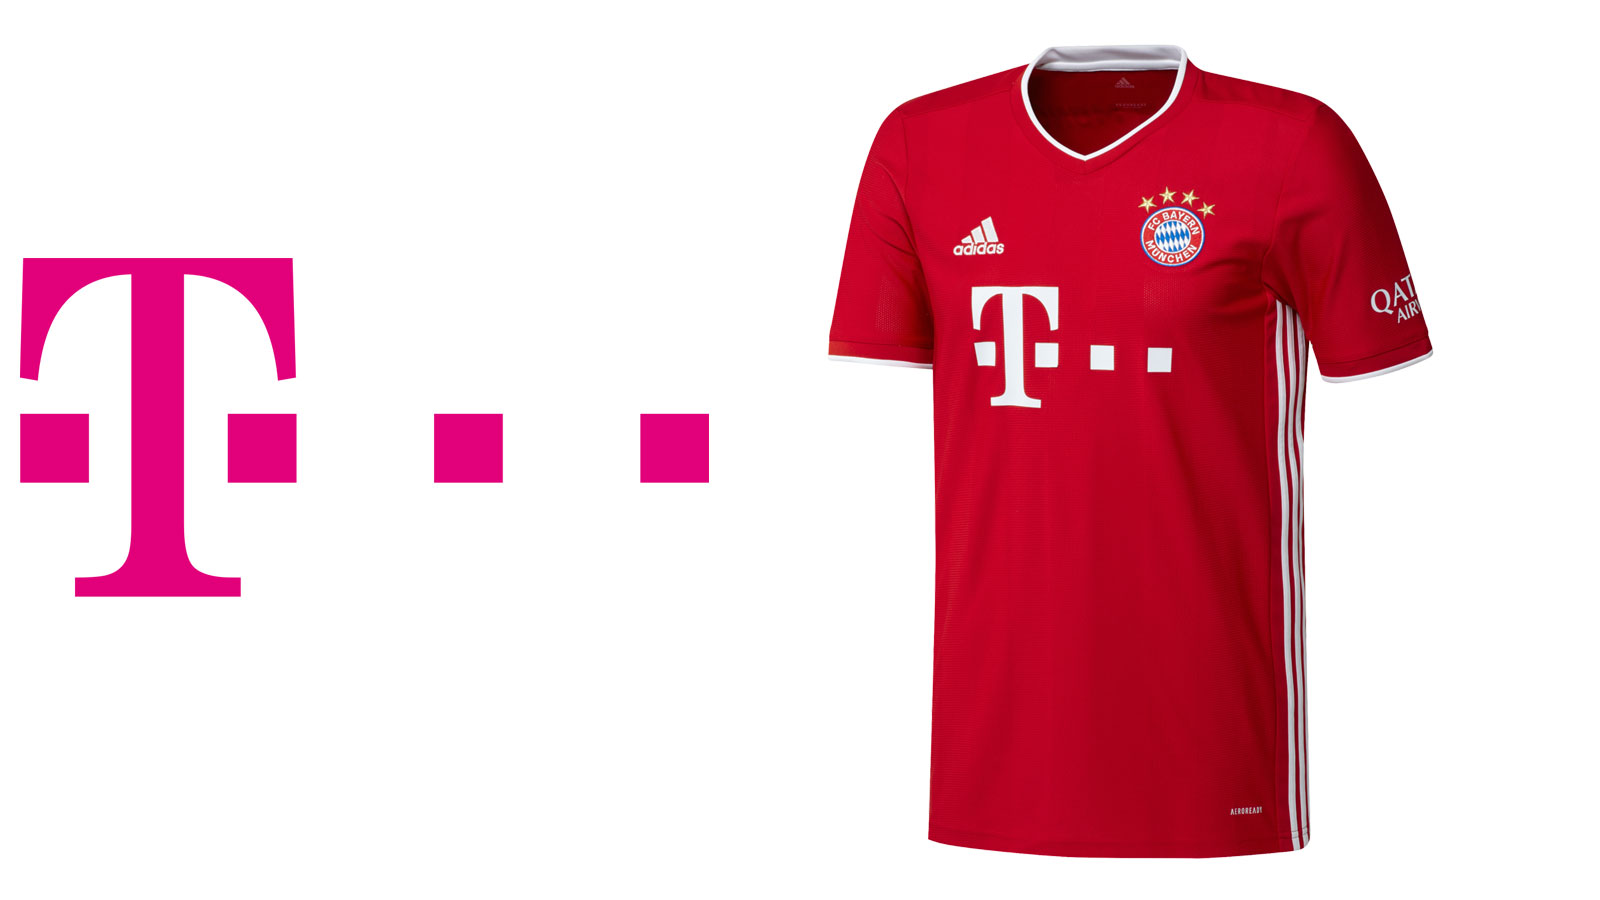 Das FC Bayern Trikot mit Werbung der Telekom